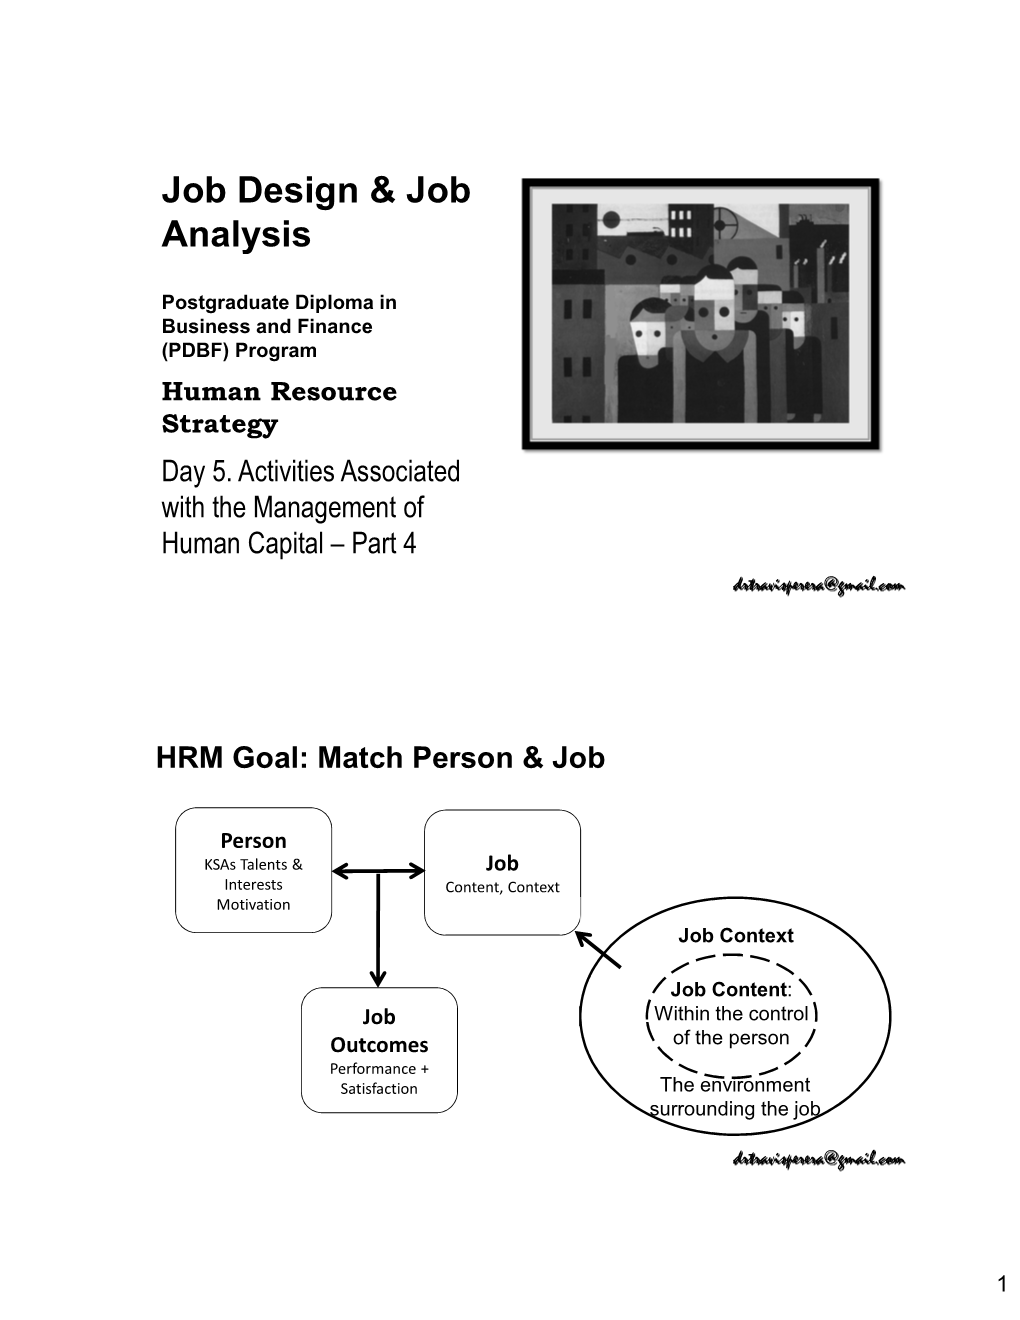 Job Design & Job Analysis